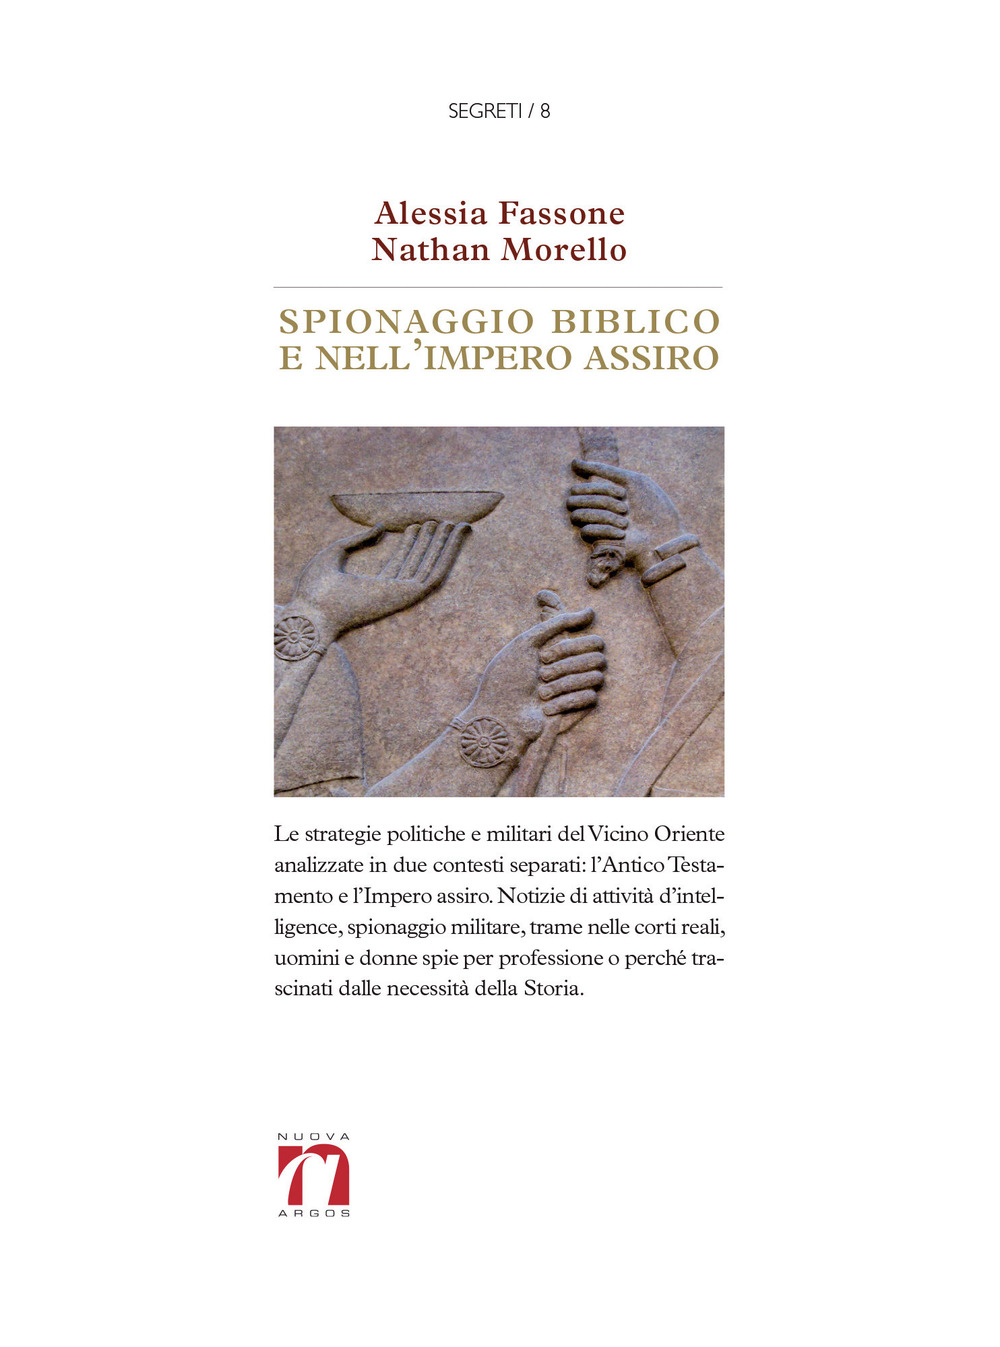 Spionaggio biblico e nell'impero assiro